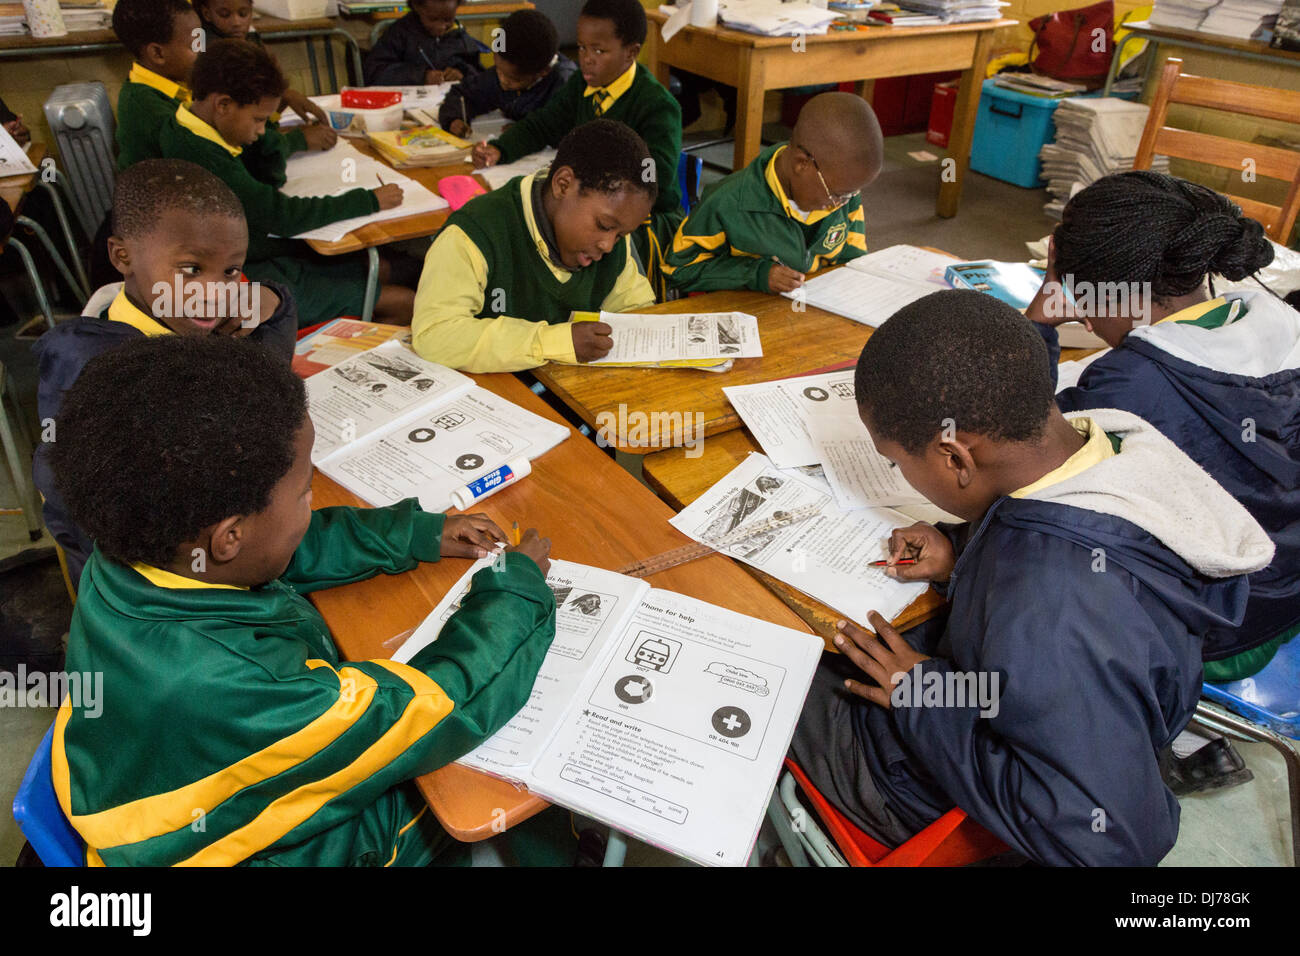 Südafrika, Cape Town, Guguletu Township. Die Jungs bei der Arbeit, in englischer Sprache. Intshinga Primary School, meist Xhosa ethnische Gruppe. Stockfoto